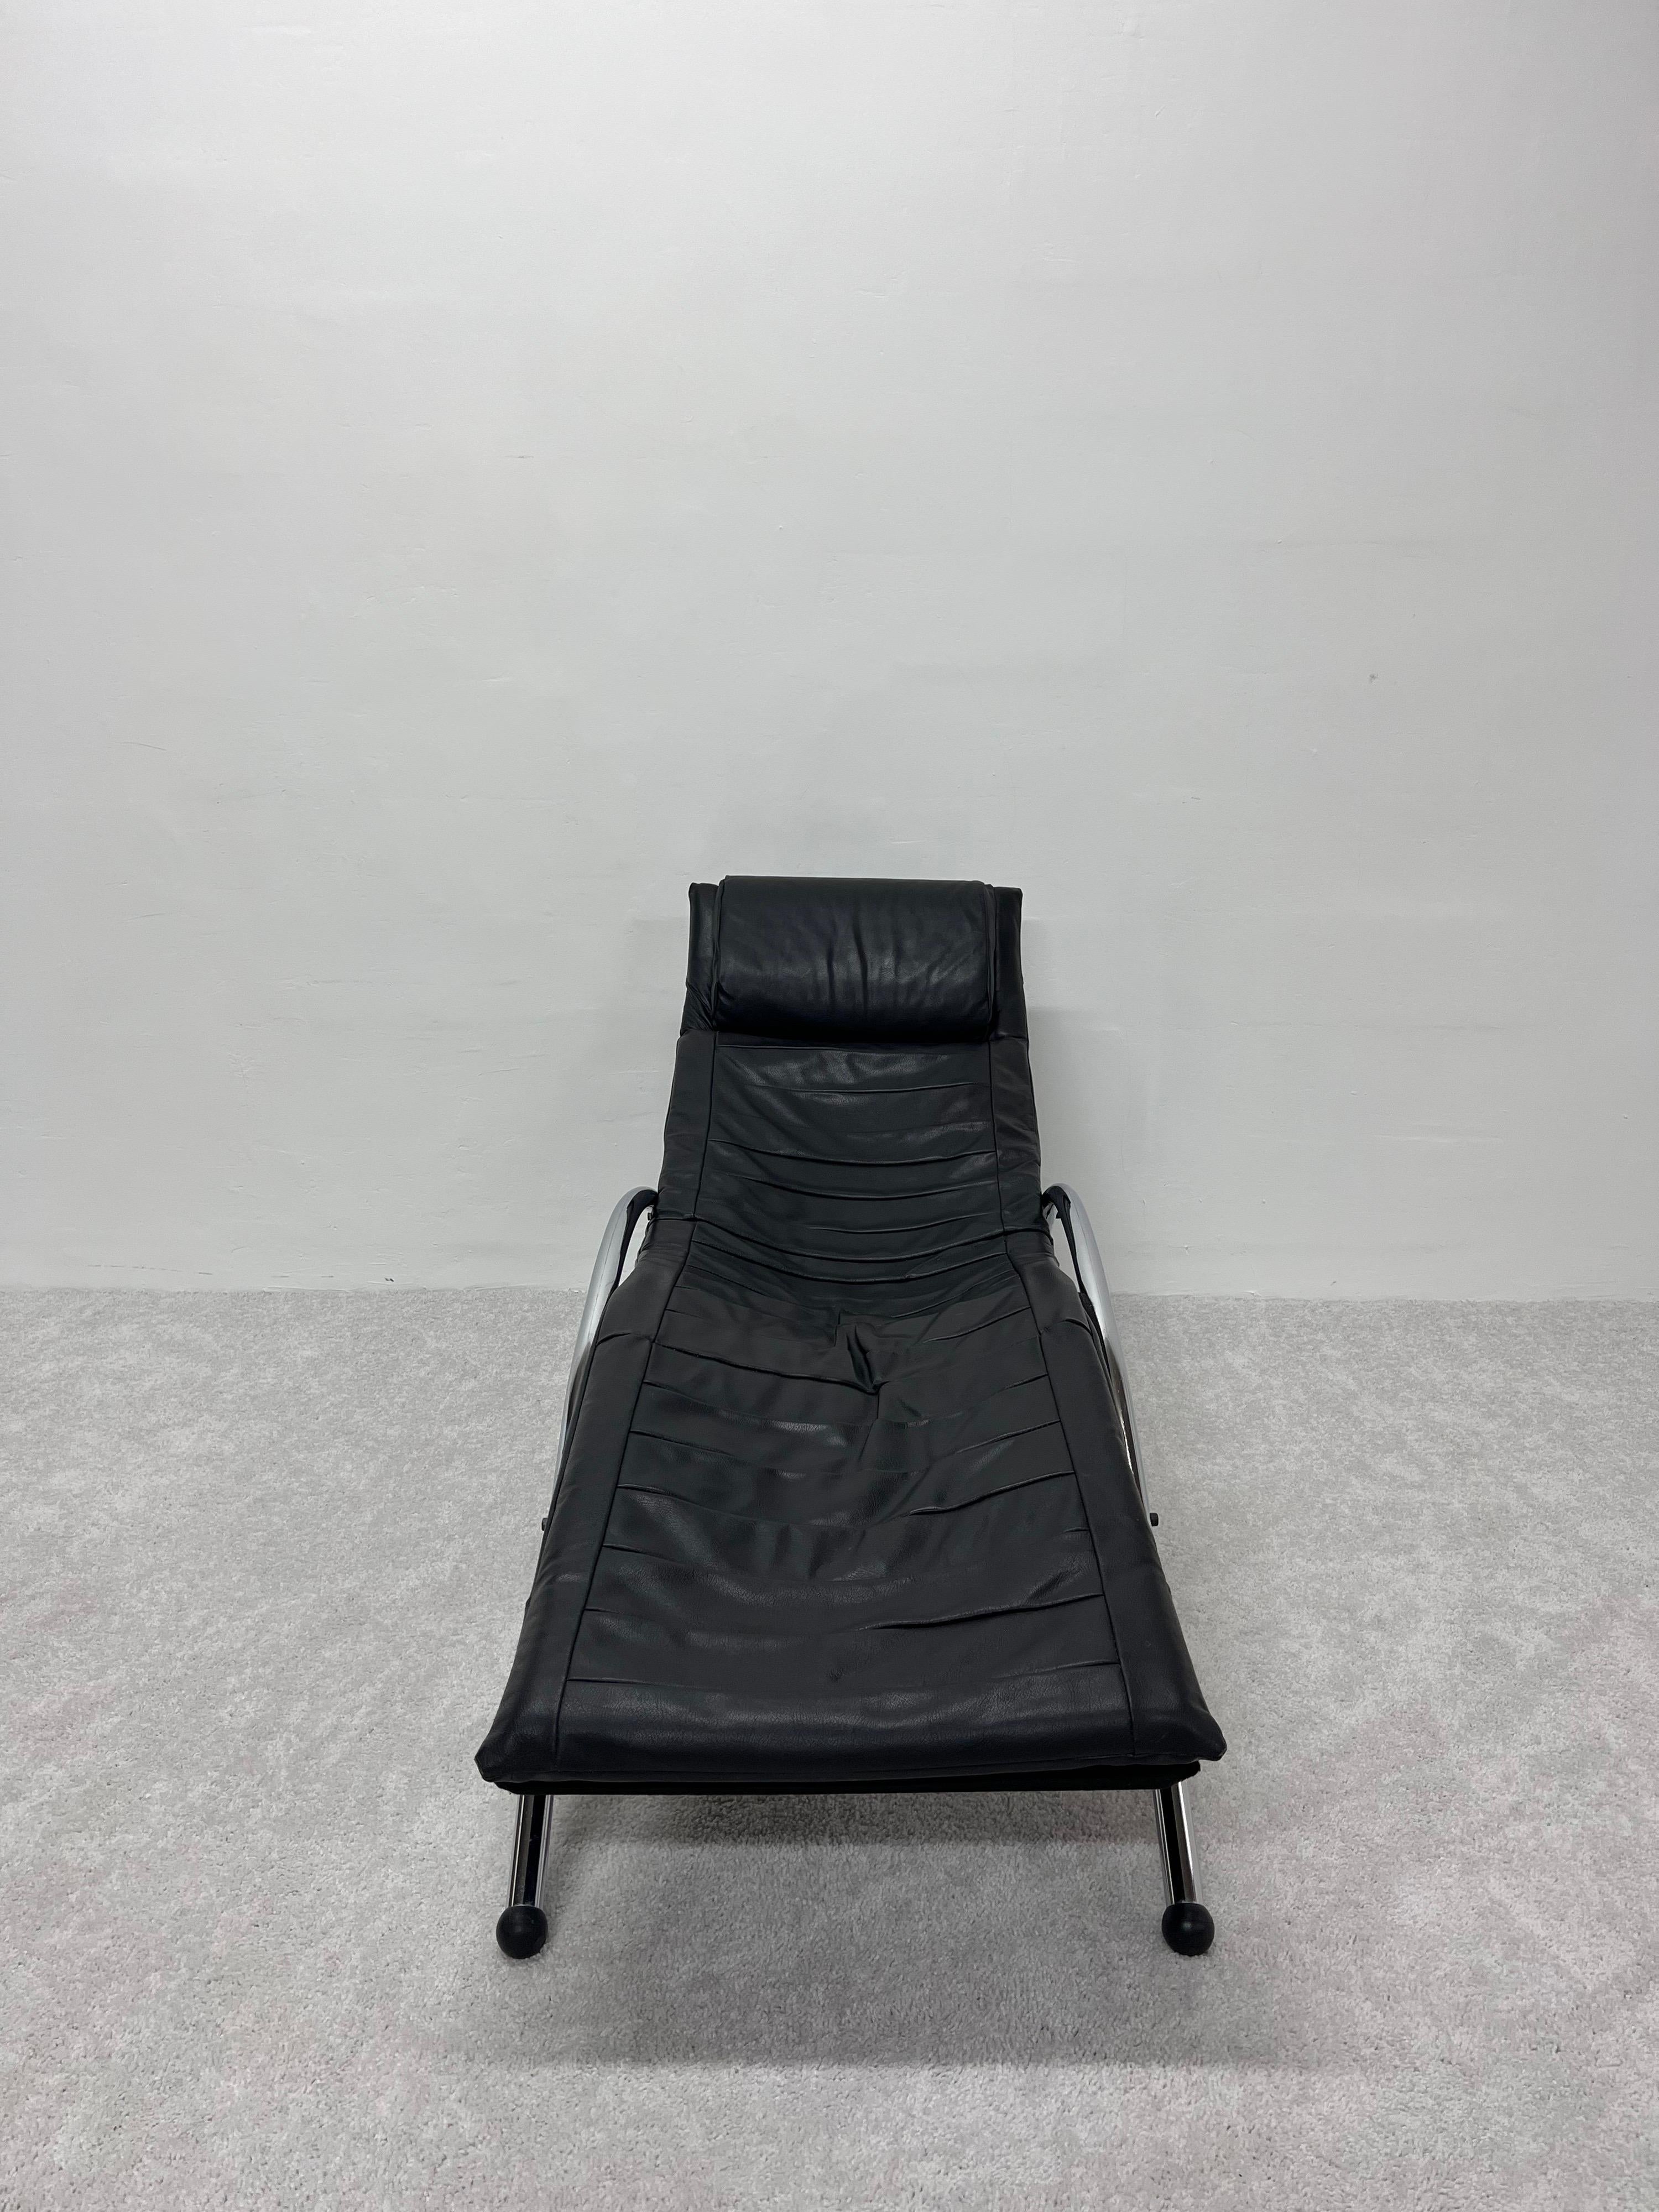 post modern chaise lounger